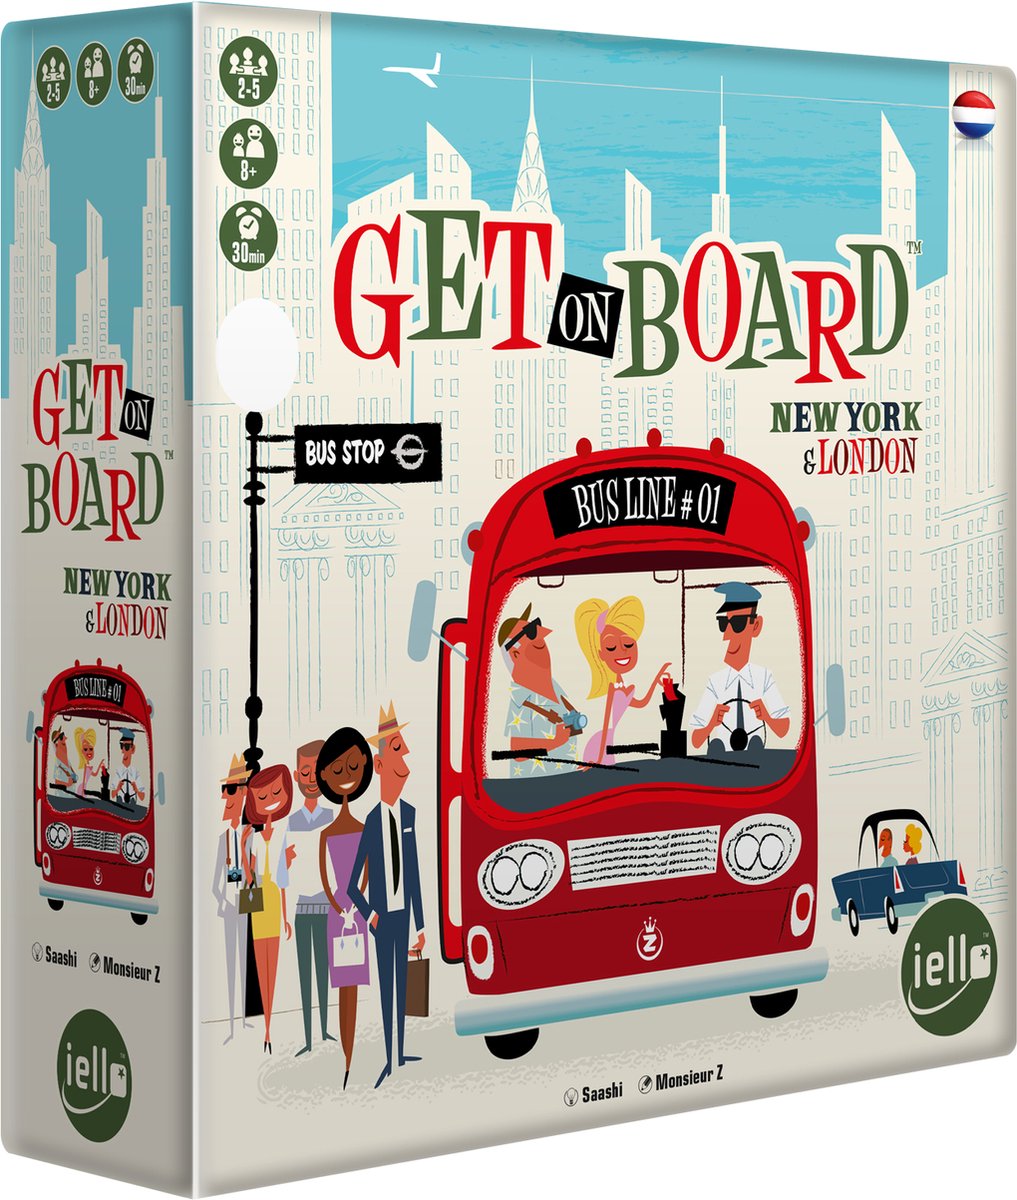 Get On Board New York & London - Bordspel - Nederlandstalig